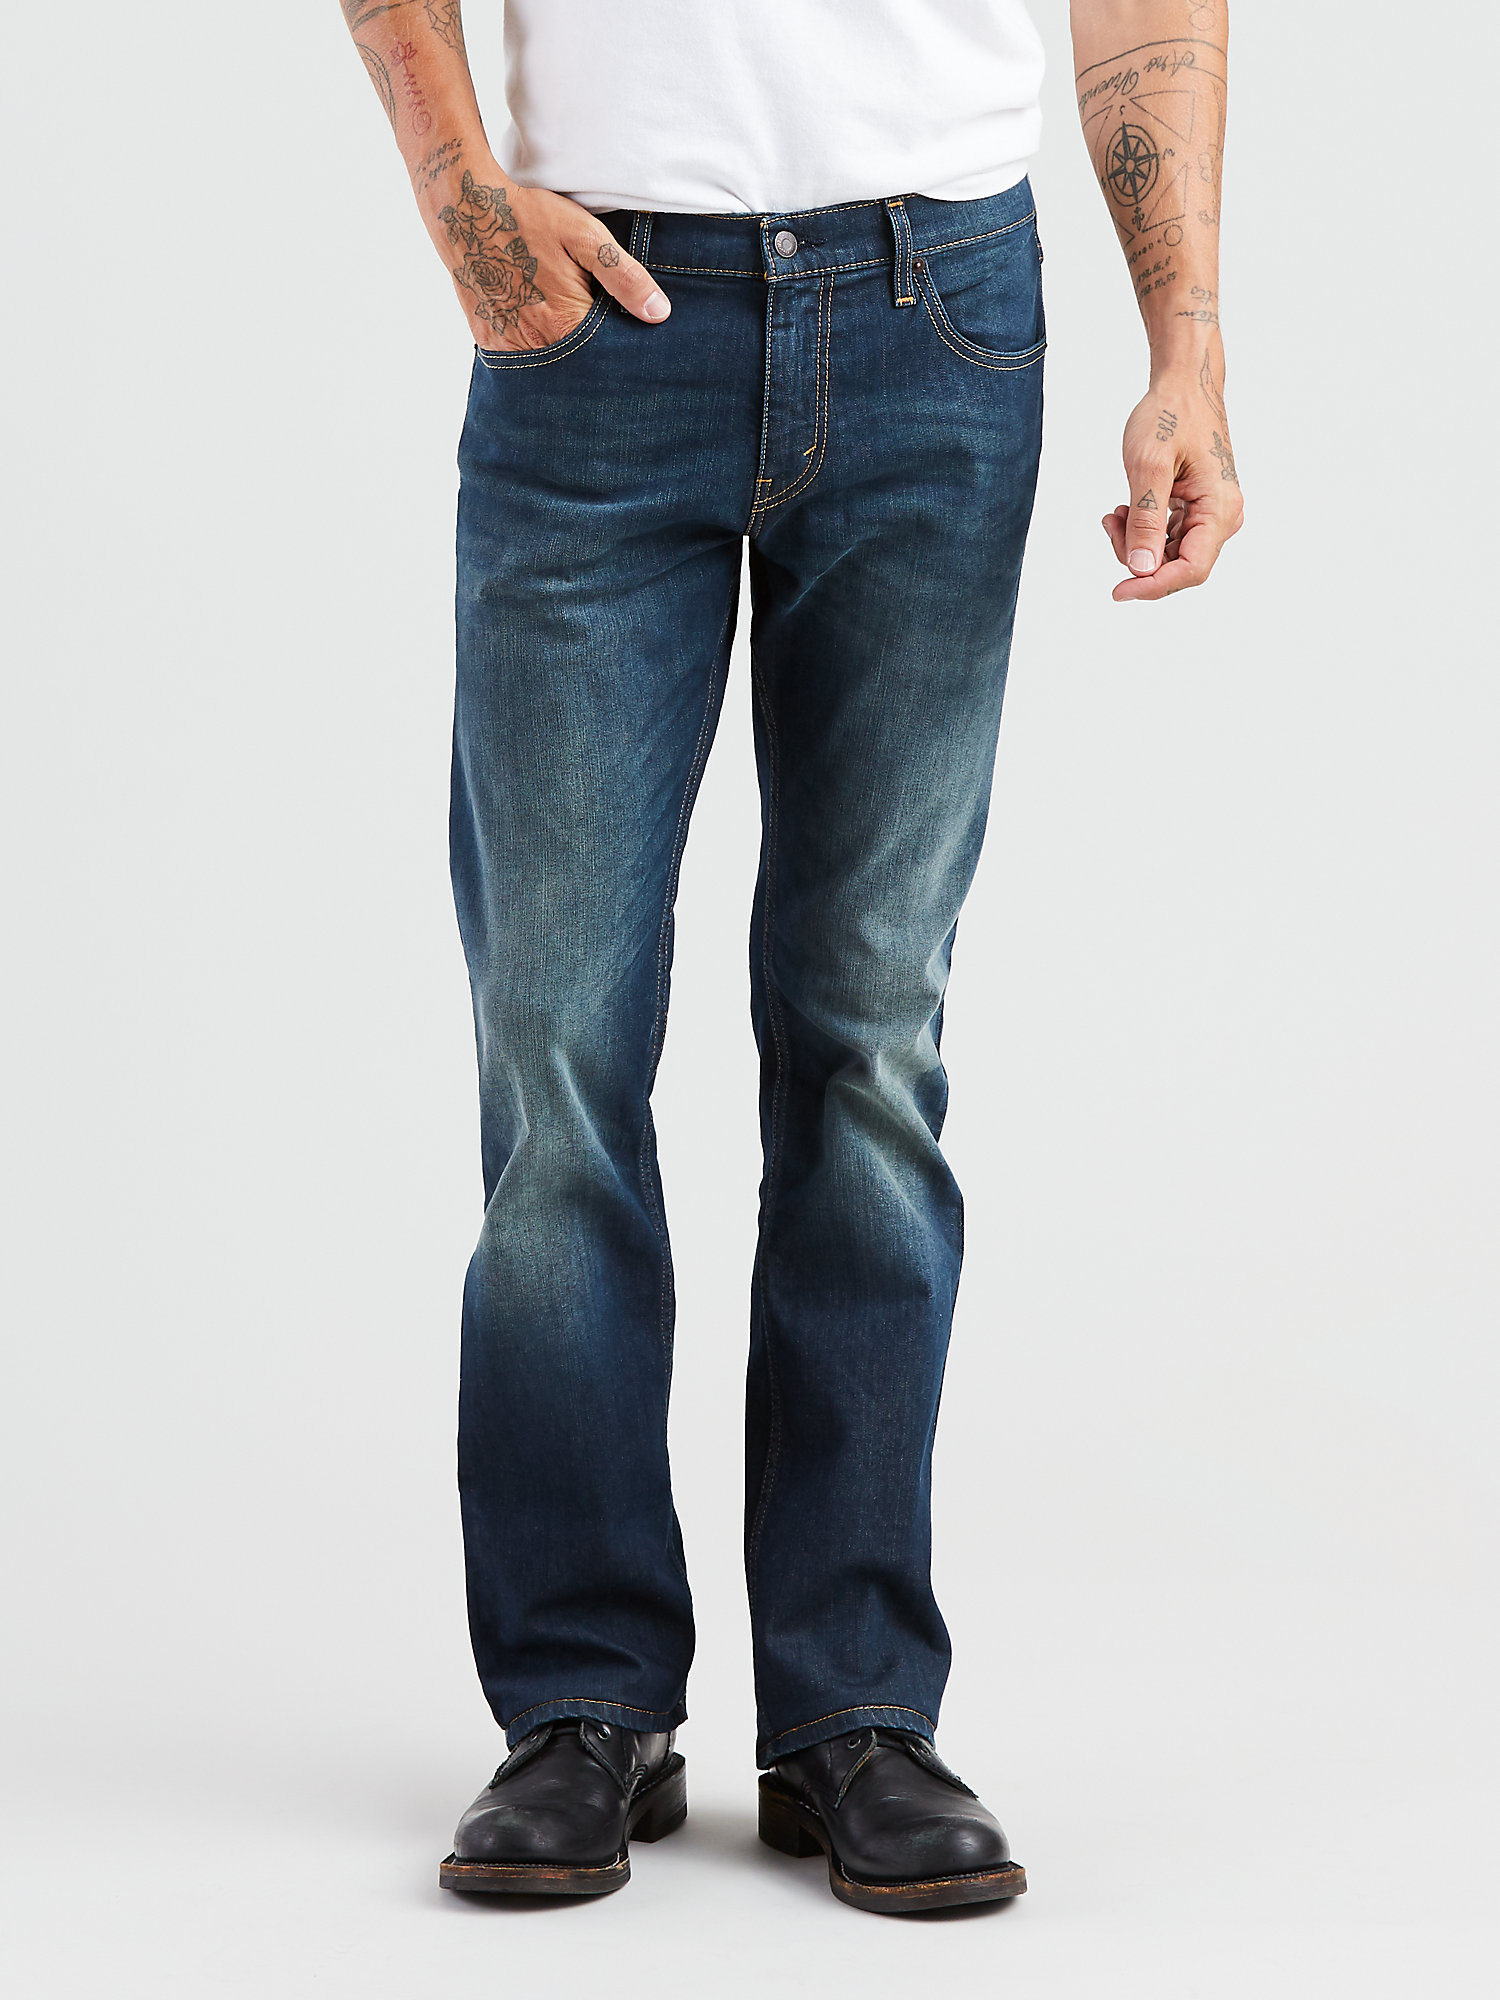 Levi's Men's 527 Slim Boot Cut Fit Jeans - image 1 of 7